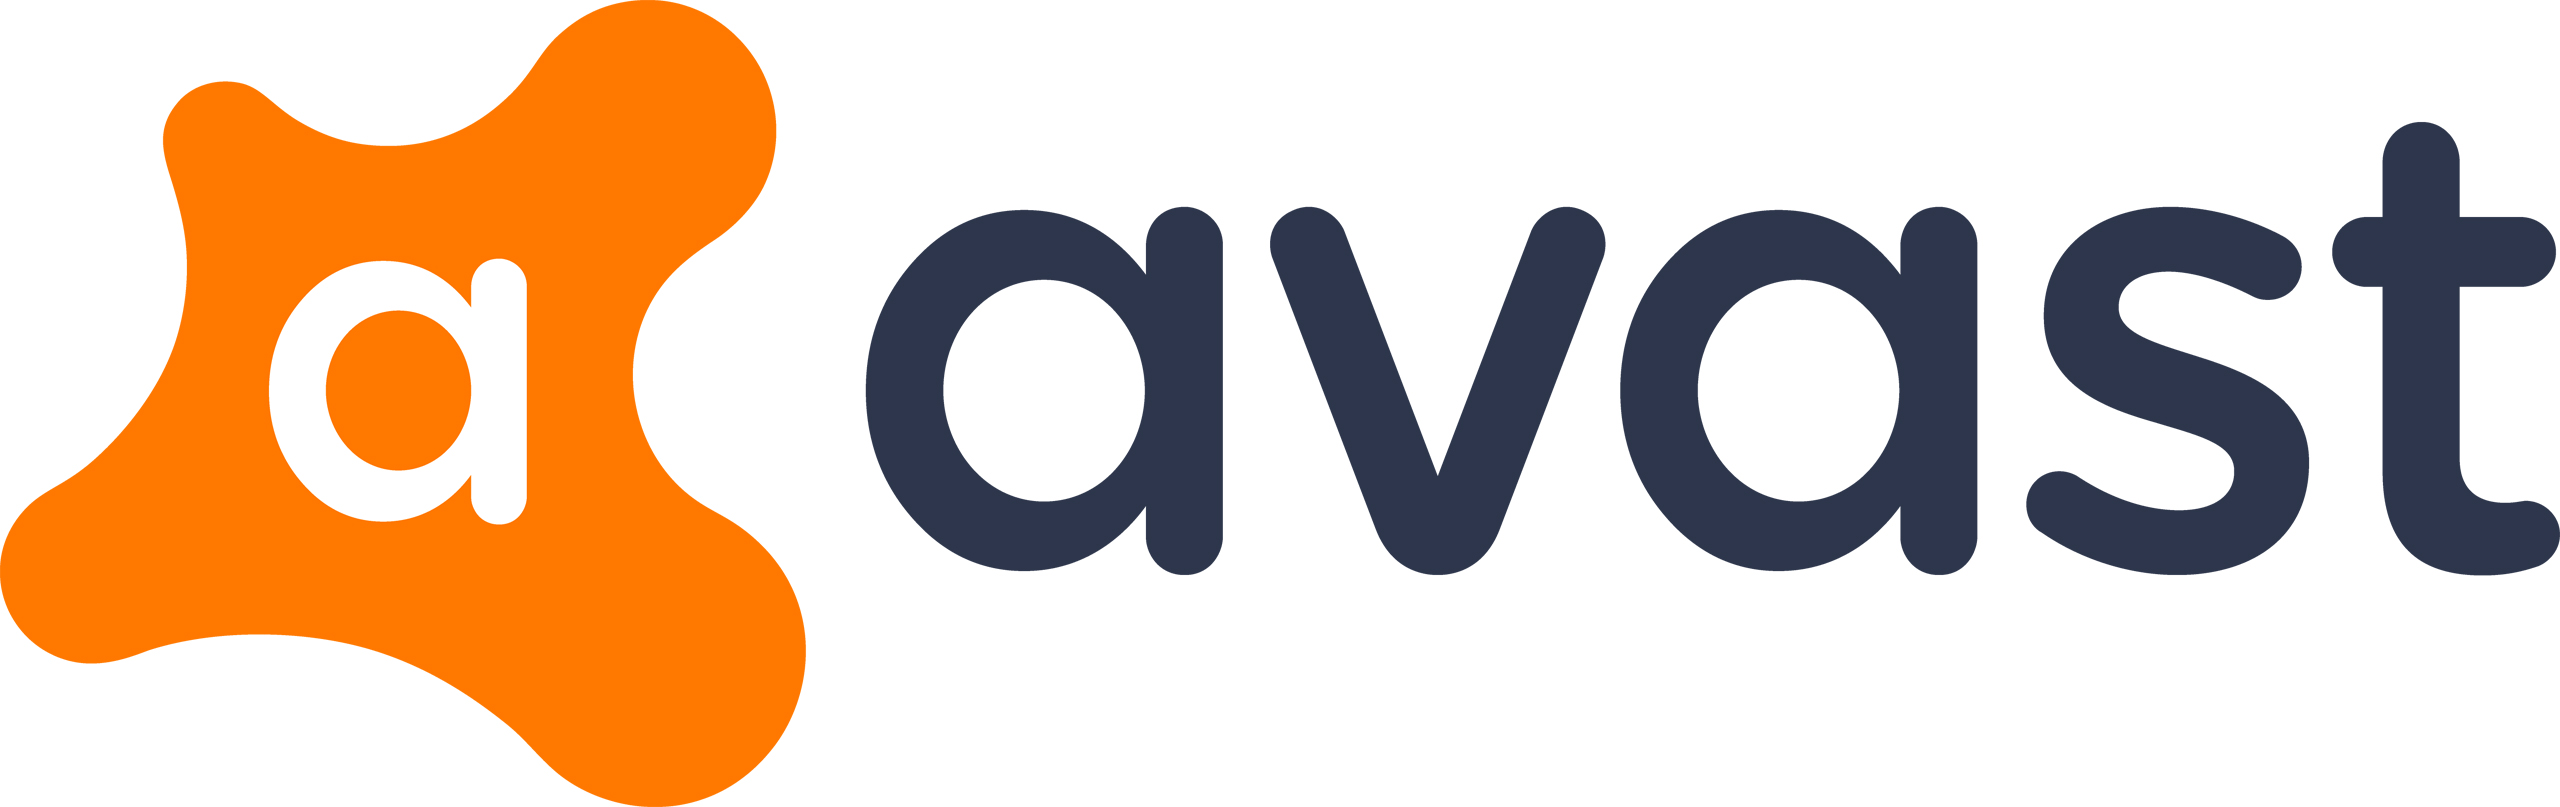 Avast logo.jpg